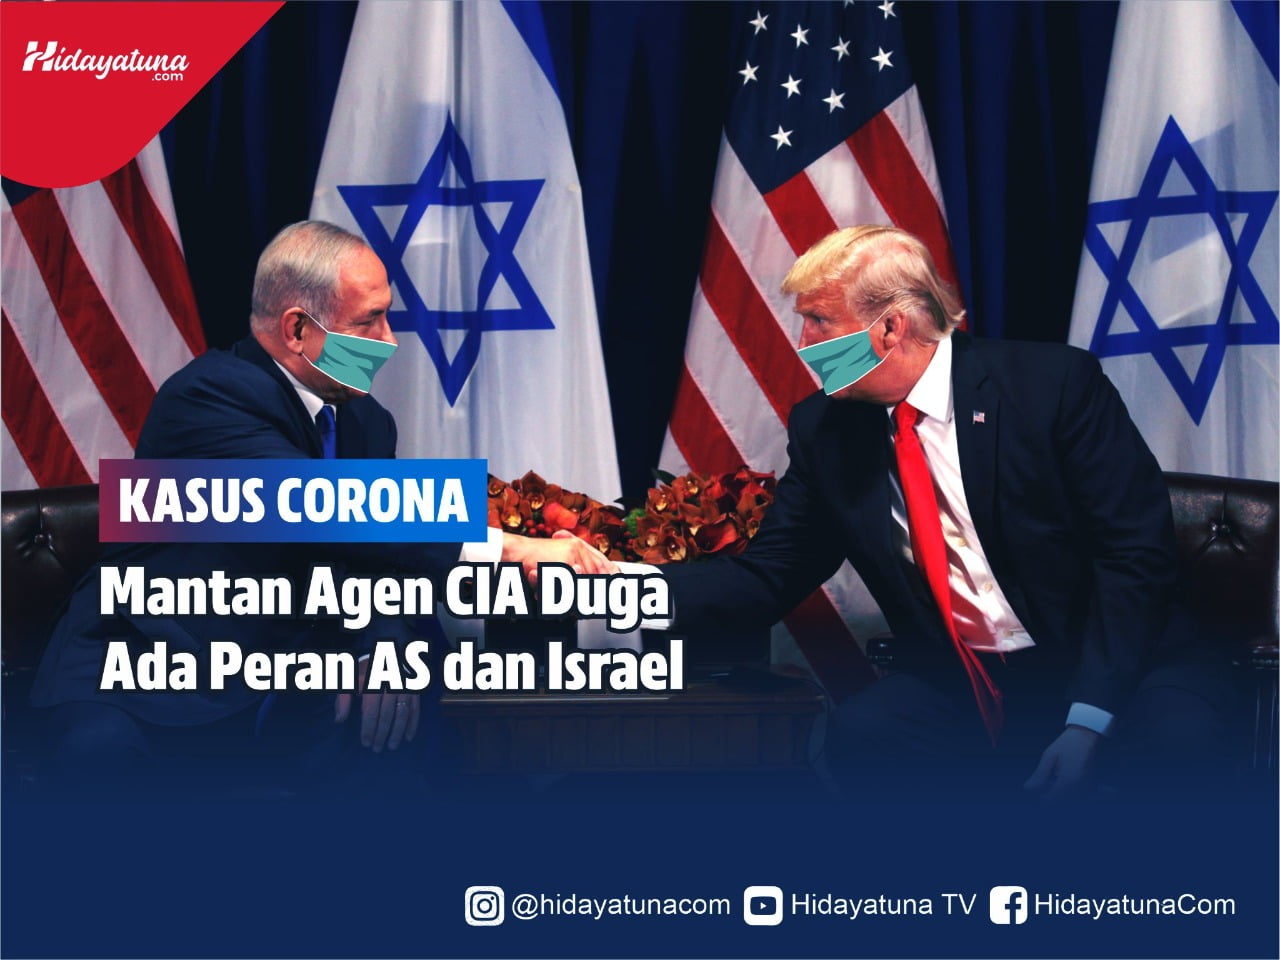  Kasus Corona, Mantan Agen CIA Duga Ada Peran AS dan Israel